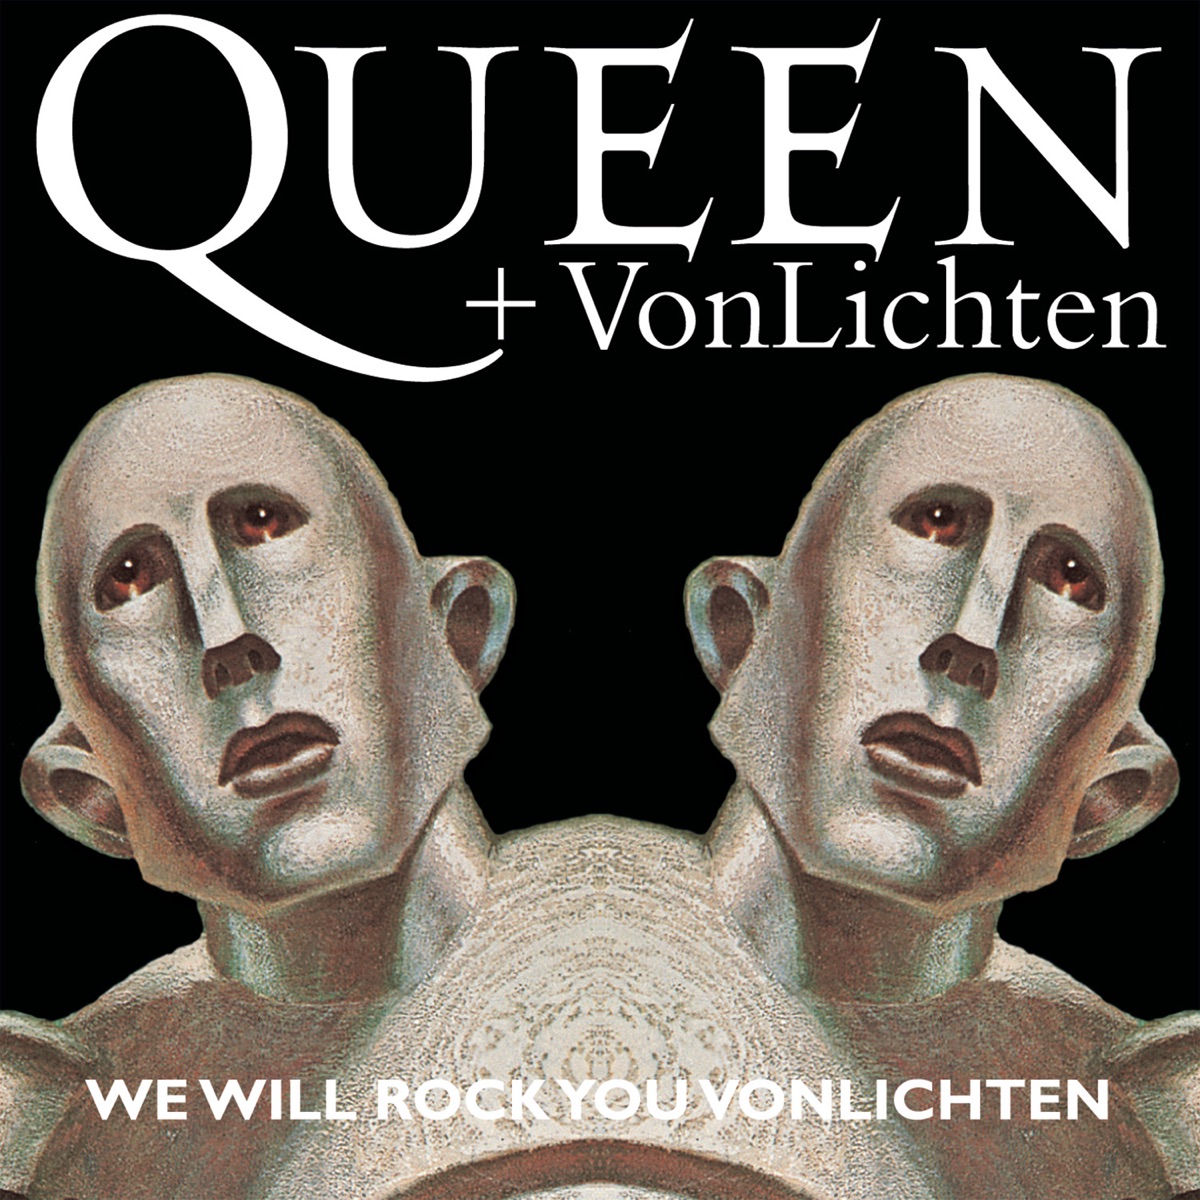 Articulation Megalopolis Ikke nok We Will Rock You VonLichten - Single by Queen + VonLichten on Apple Music